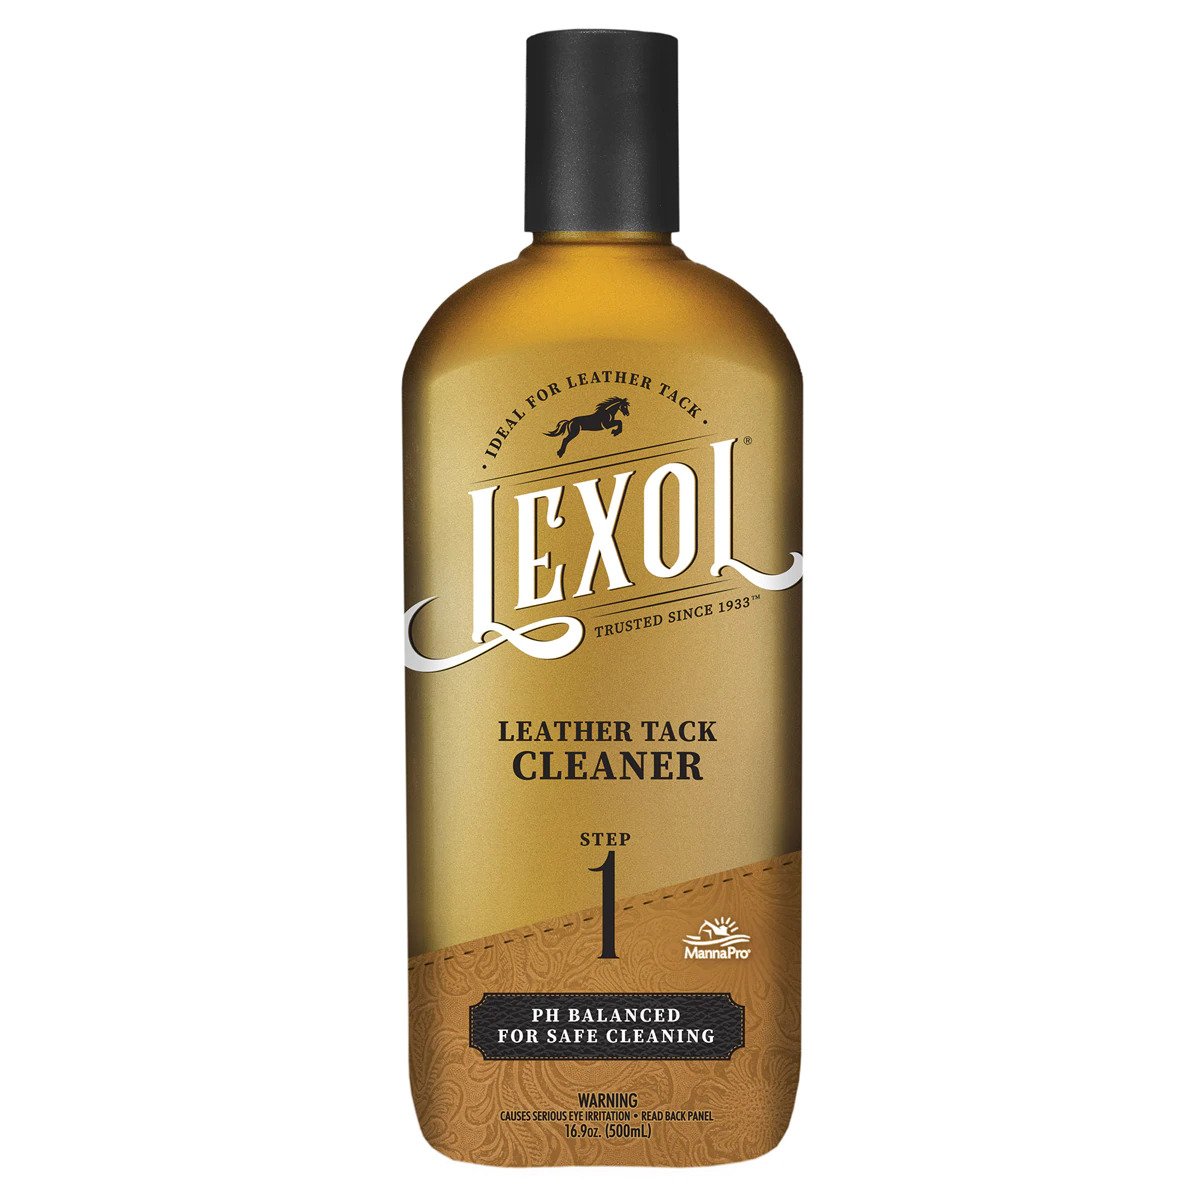 Lexol Cleaner